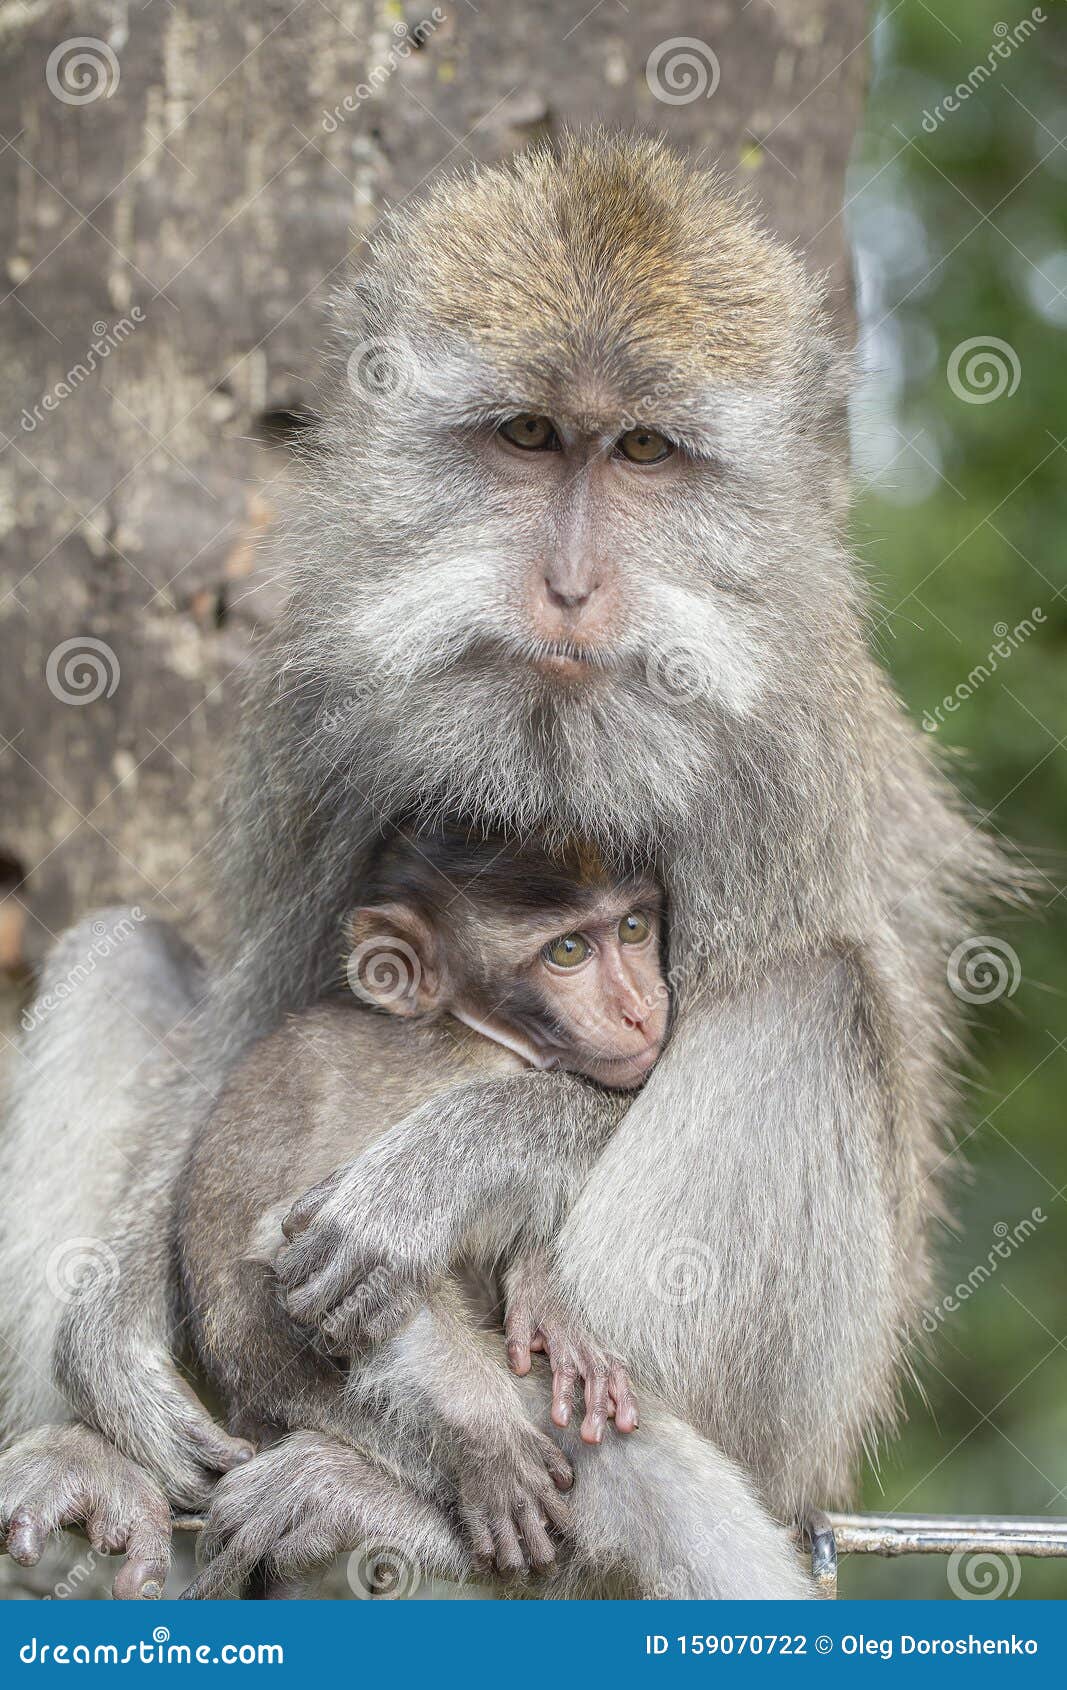 圣猴森林公园（Ubud Monkey Forest)在印尼人眼中，猴子是神？|圣猴森林公园|印尼|乌布_新浪新闻